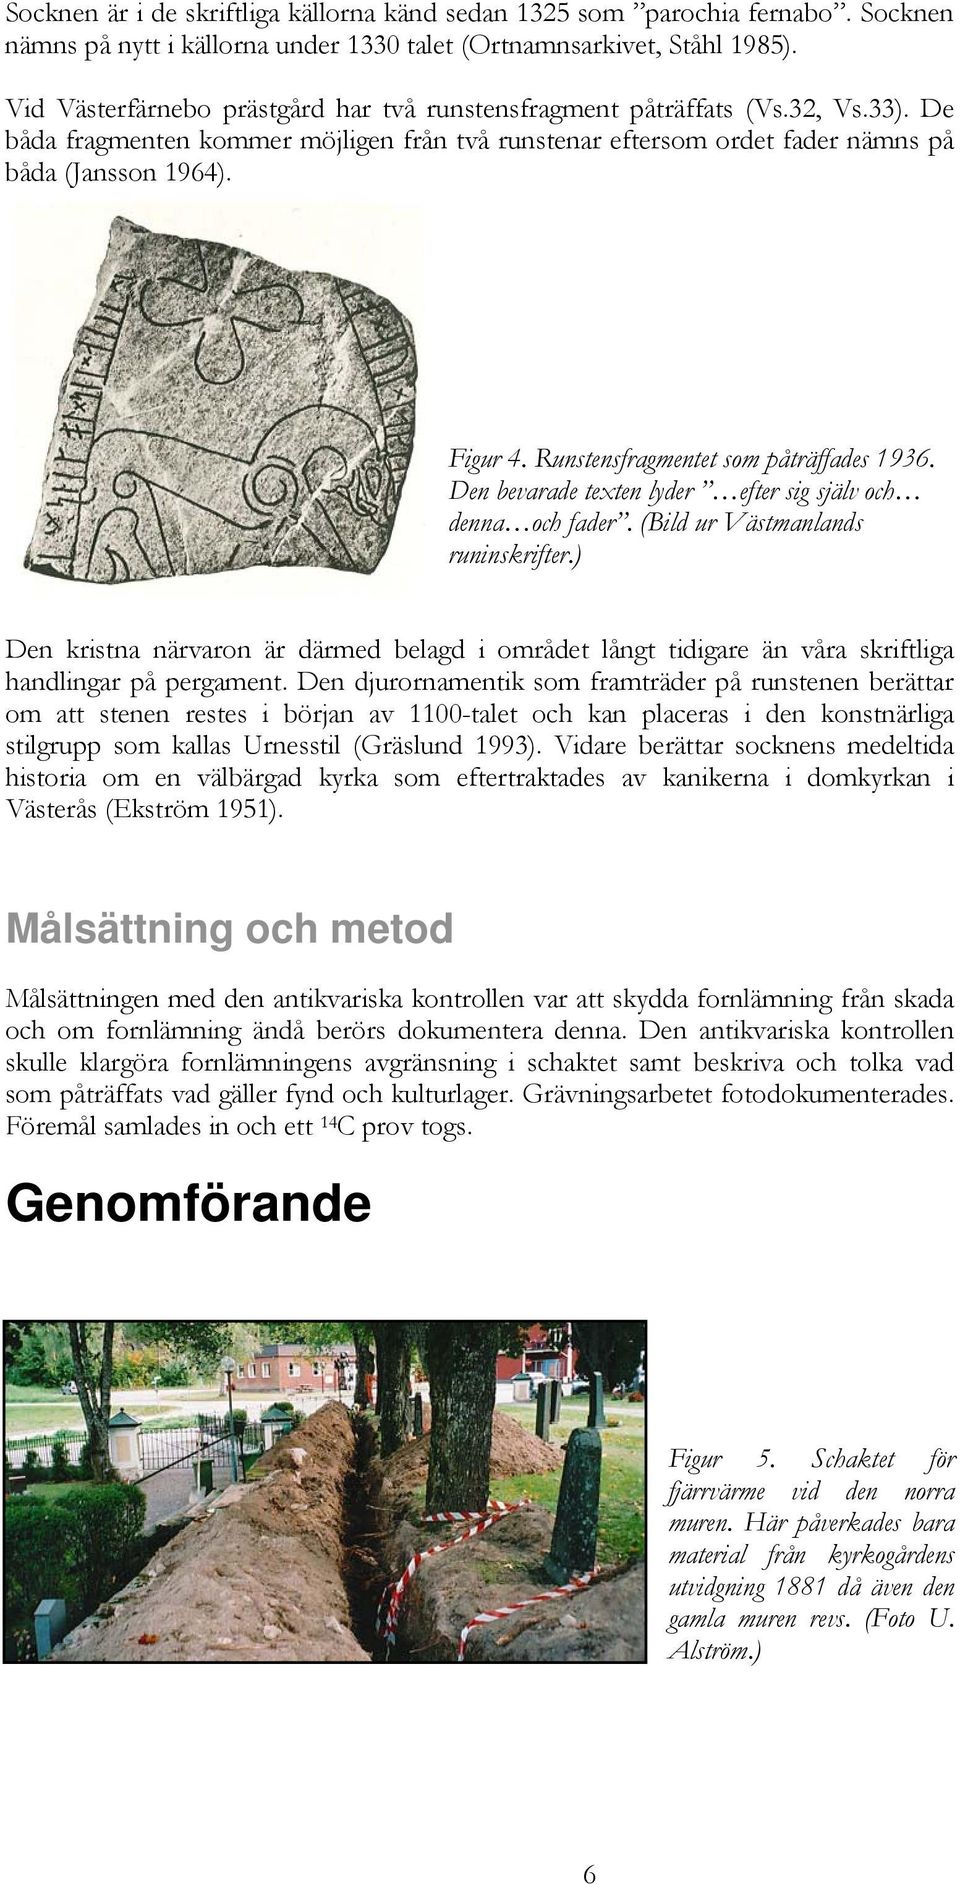 Runstensfragmentet som påträffades 1936. Den bevarade texten lyder efter sig själv och denna och fader. (Bild ur Västmanlands runinskrifter.